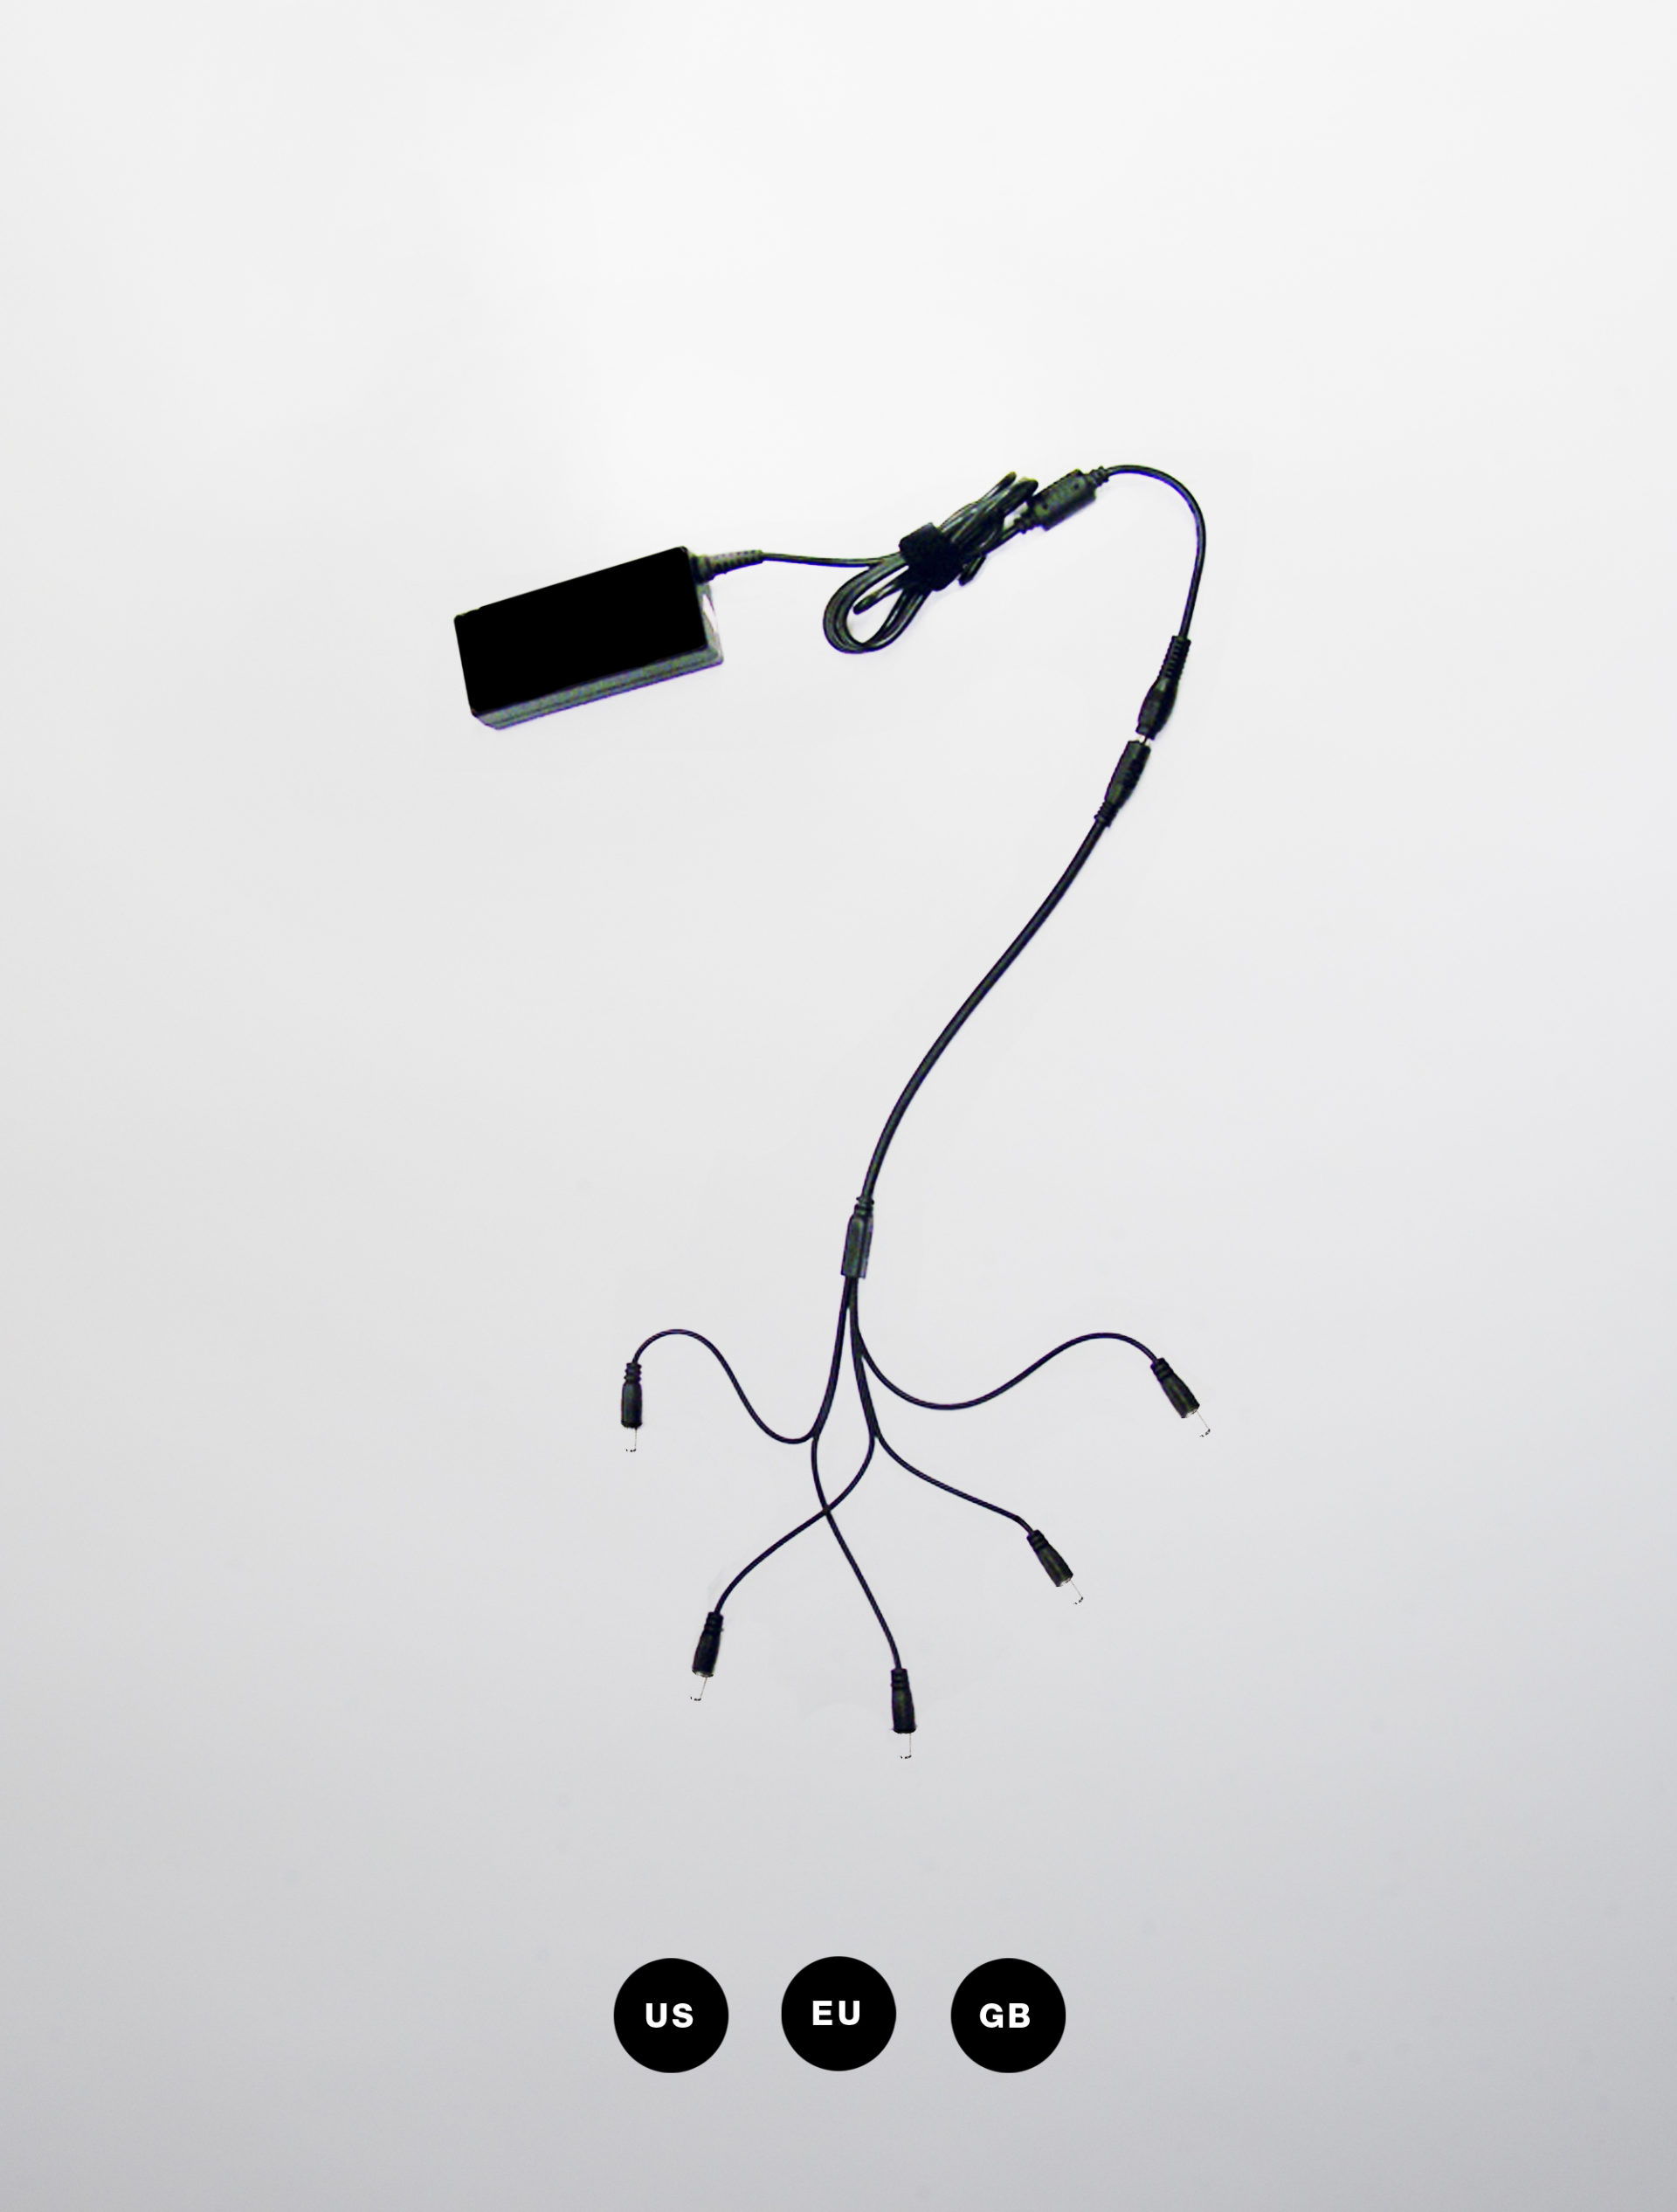 Chargeur multiple USB-C pour lampe HISLE